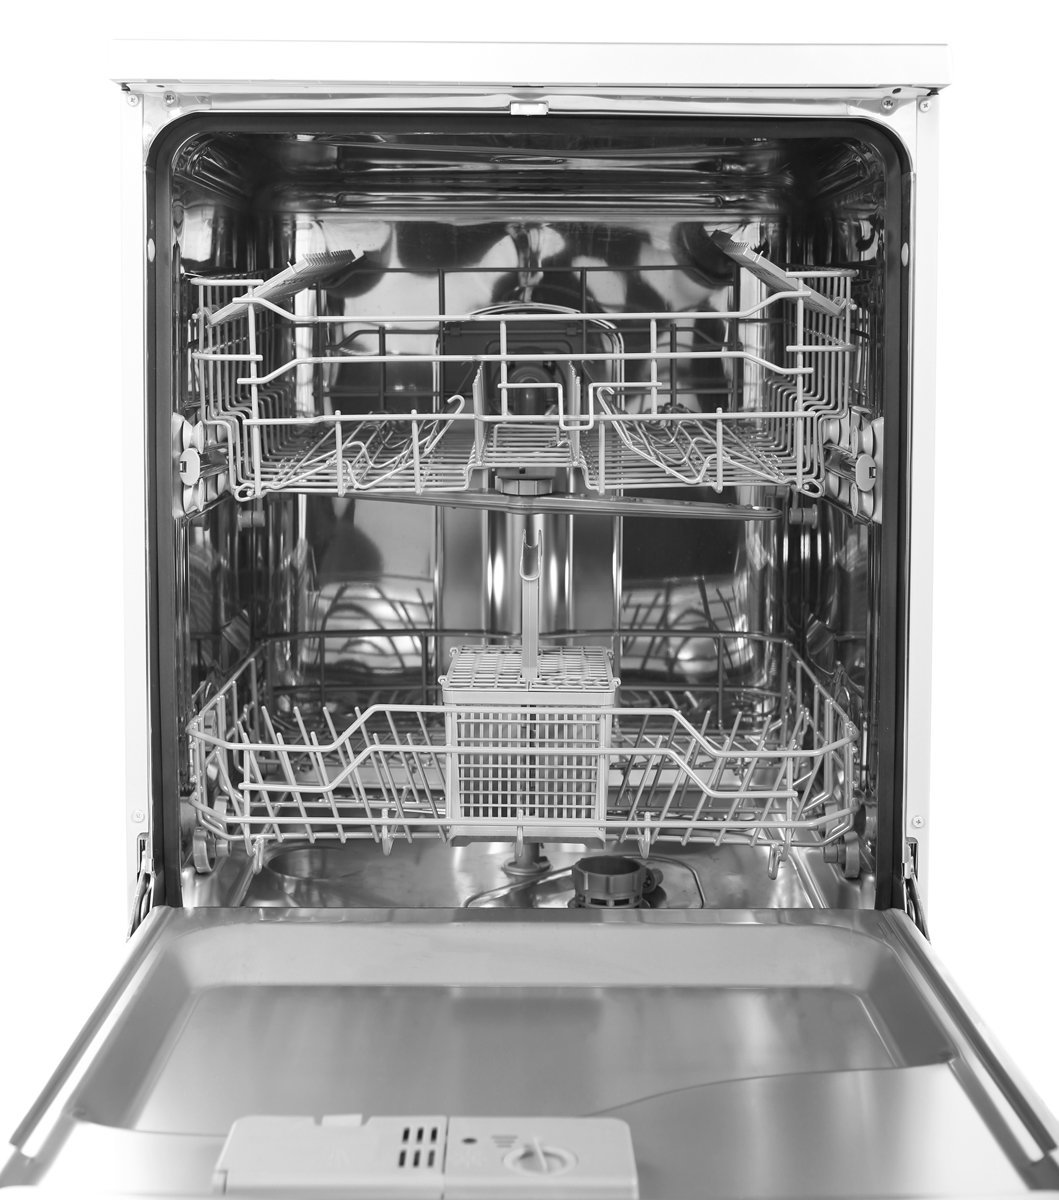 artusi dishwasher reviews